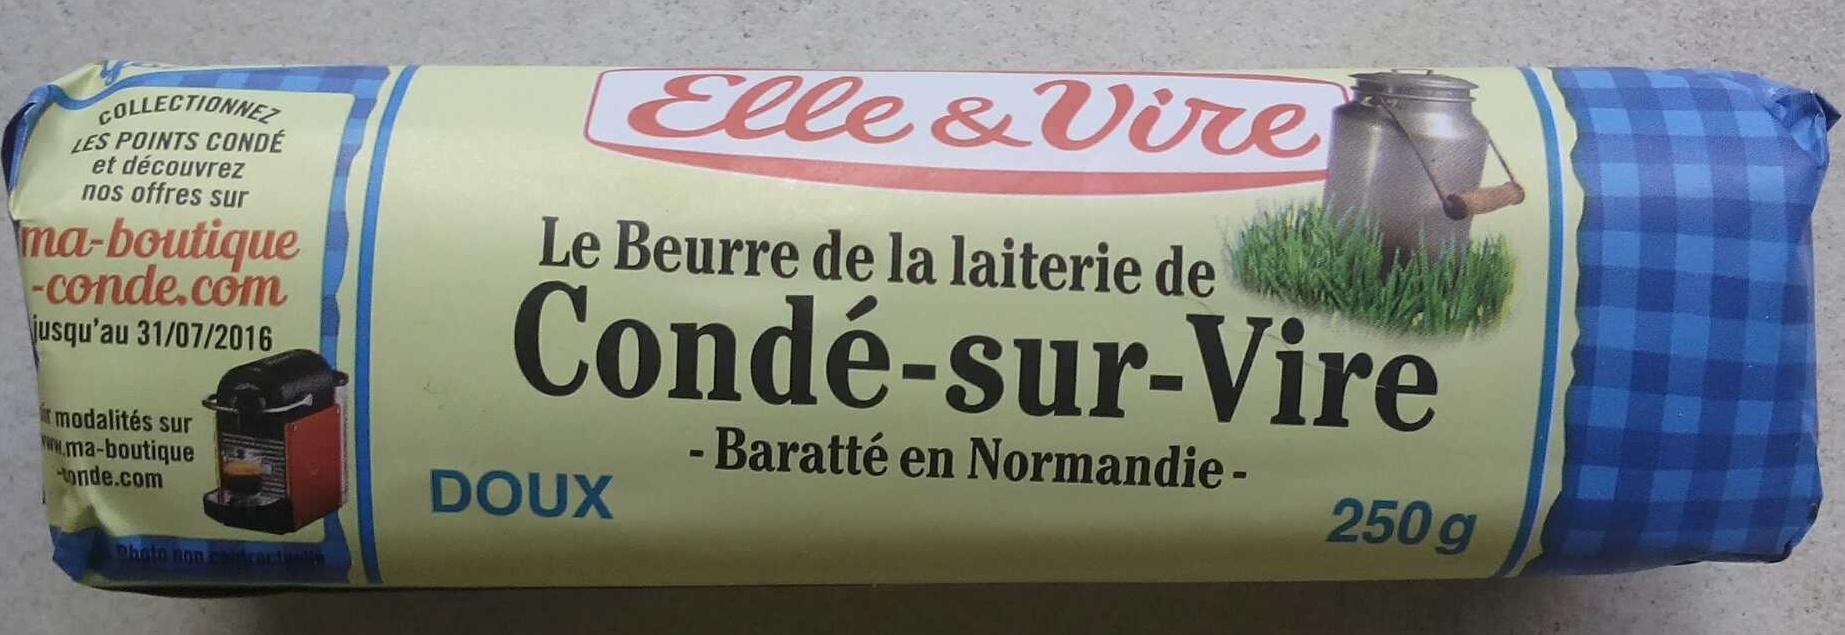 Le Beurre de Condé-sur-Vire doux - Product